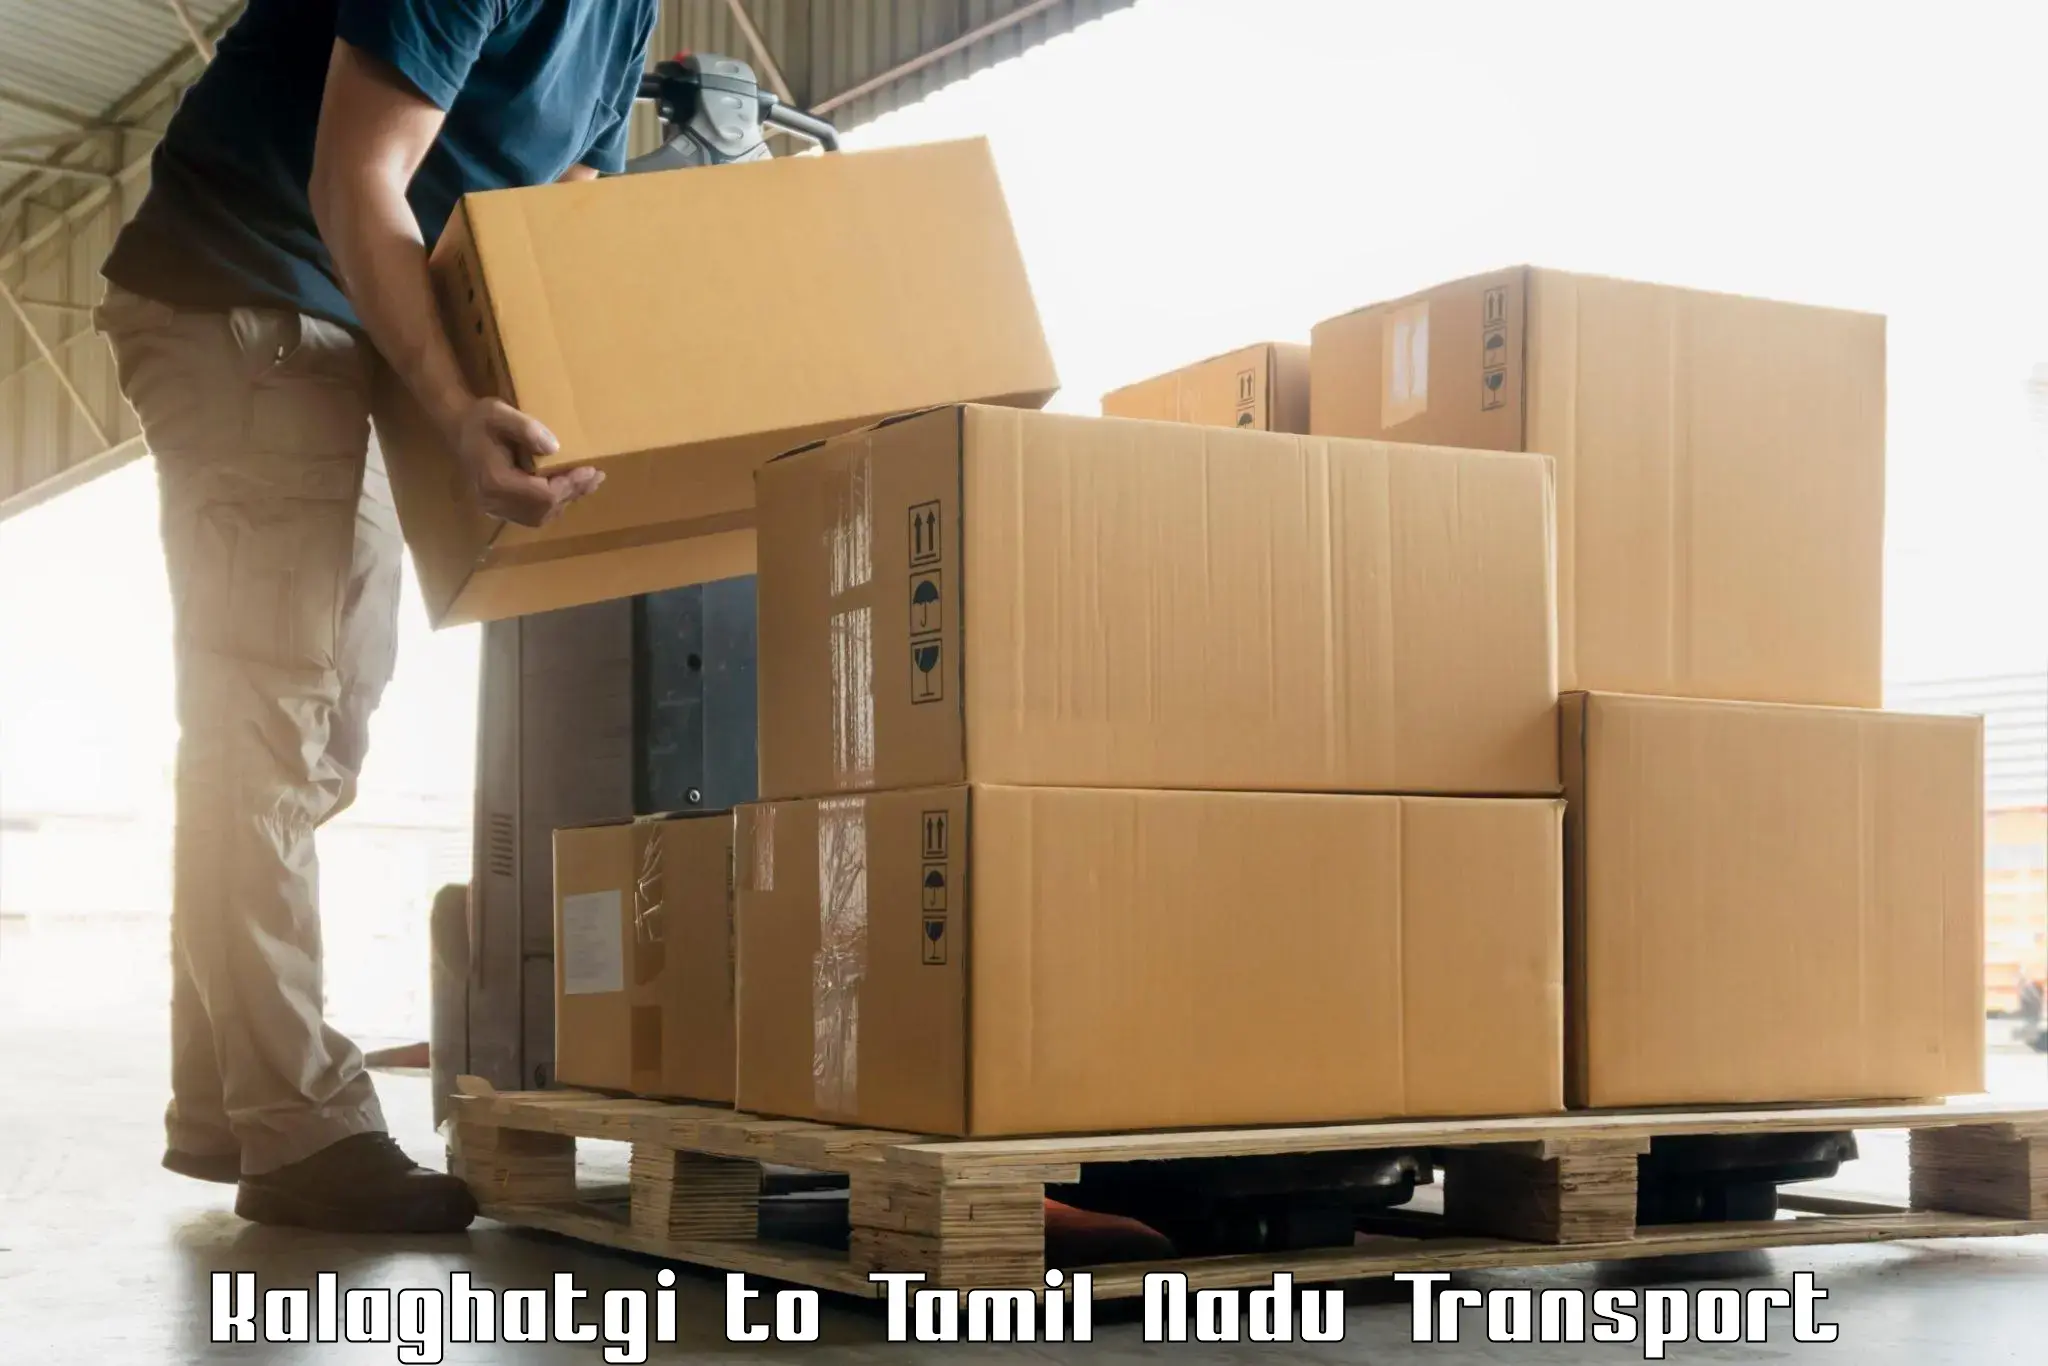 Furniture transport service Kalaghatgi to Perunali